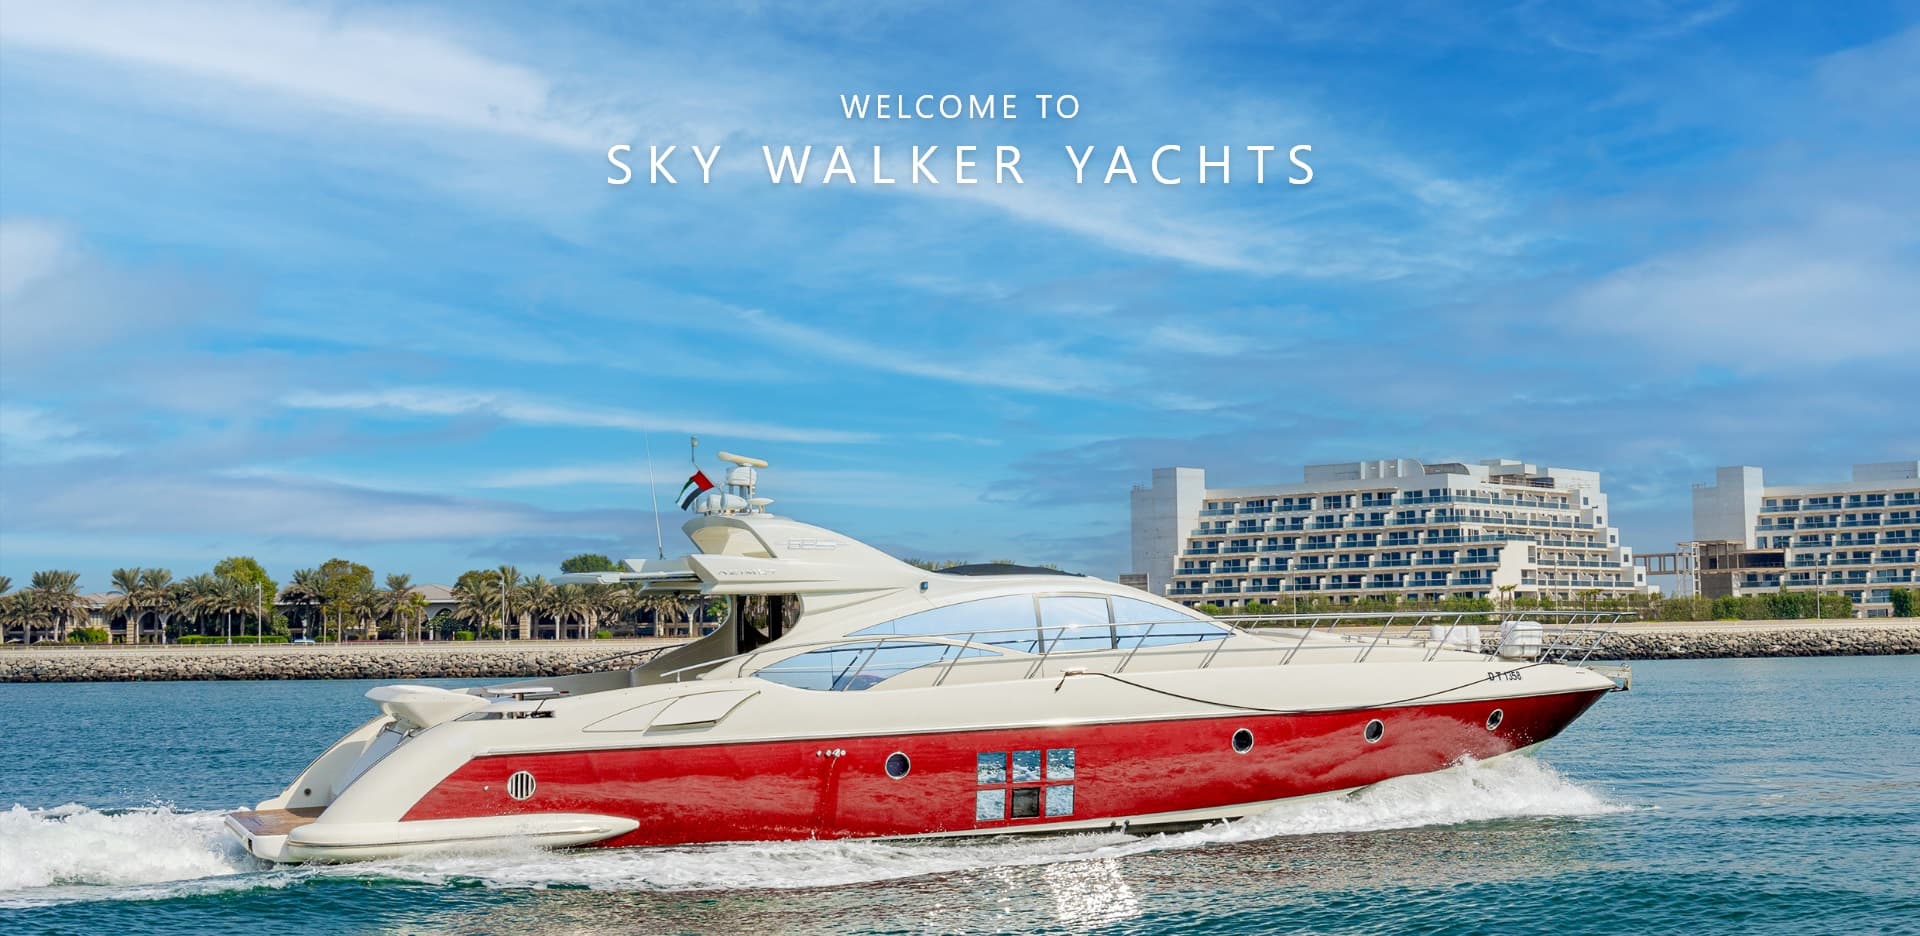 skywalker yacht rental dubai